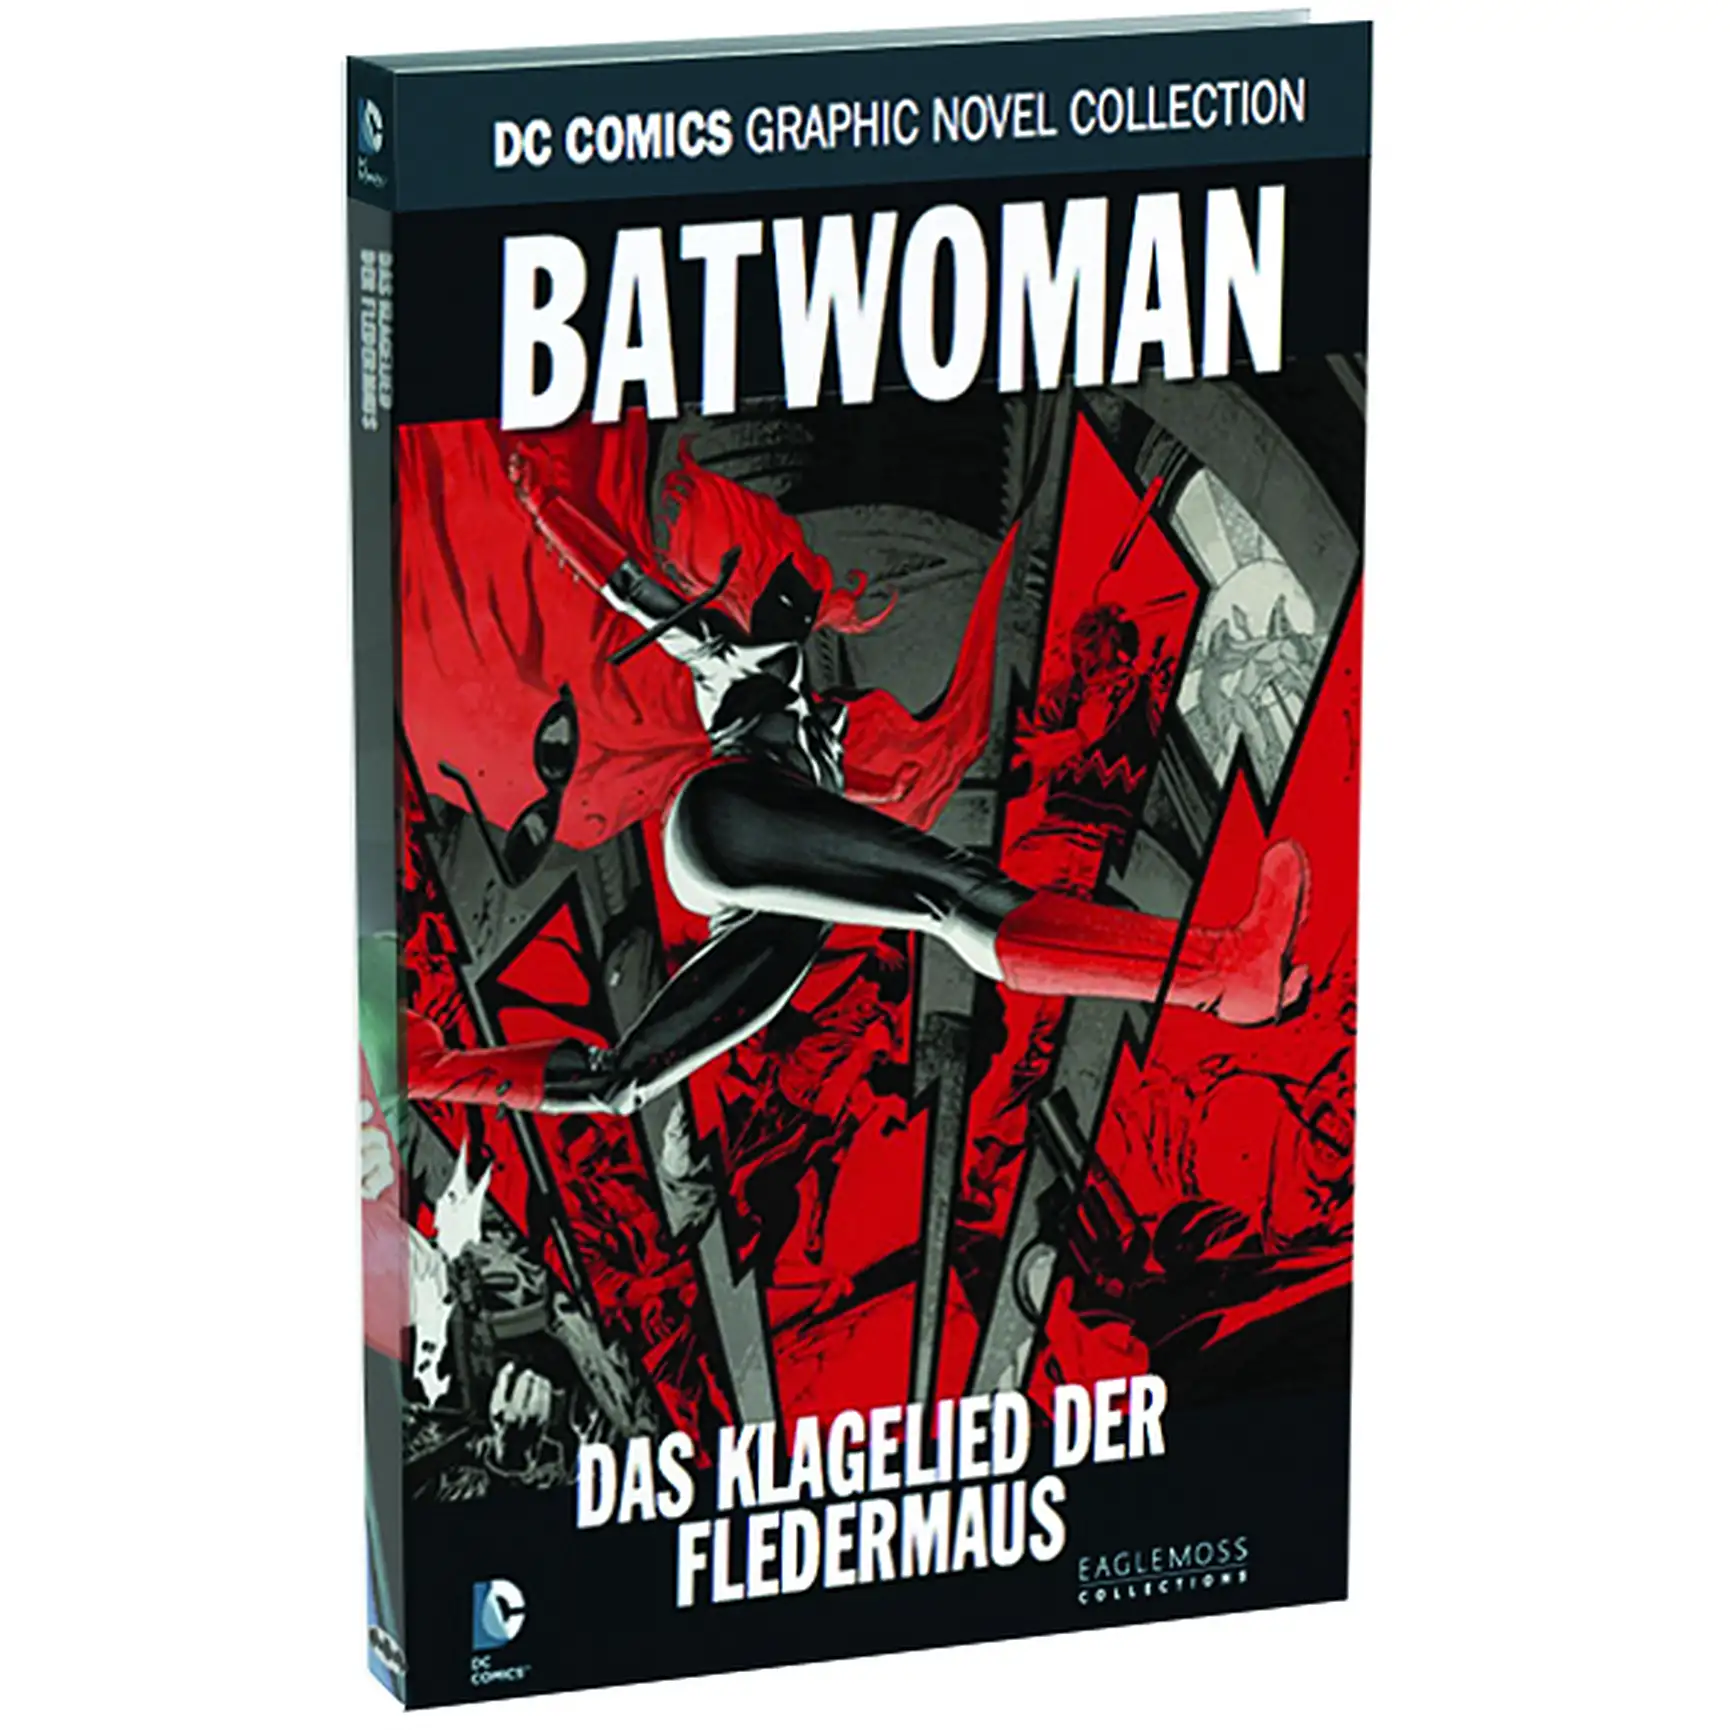 DC Comics Graphic Novel Collection Batwoman - Das Klagelied der Fledermaus